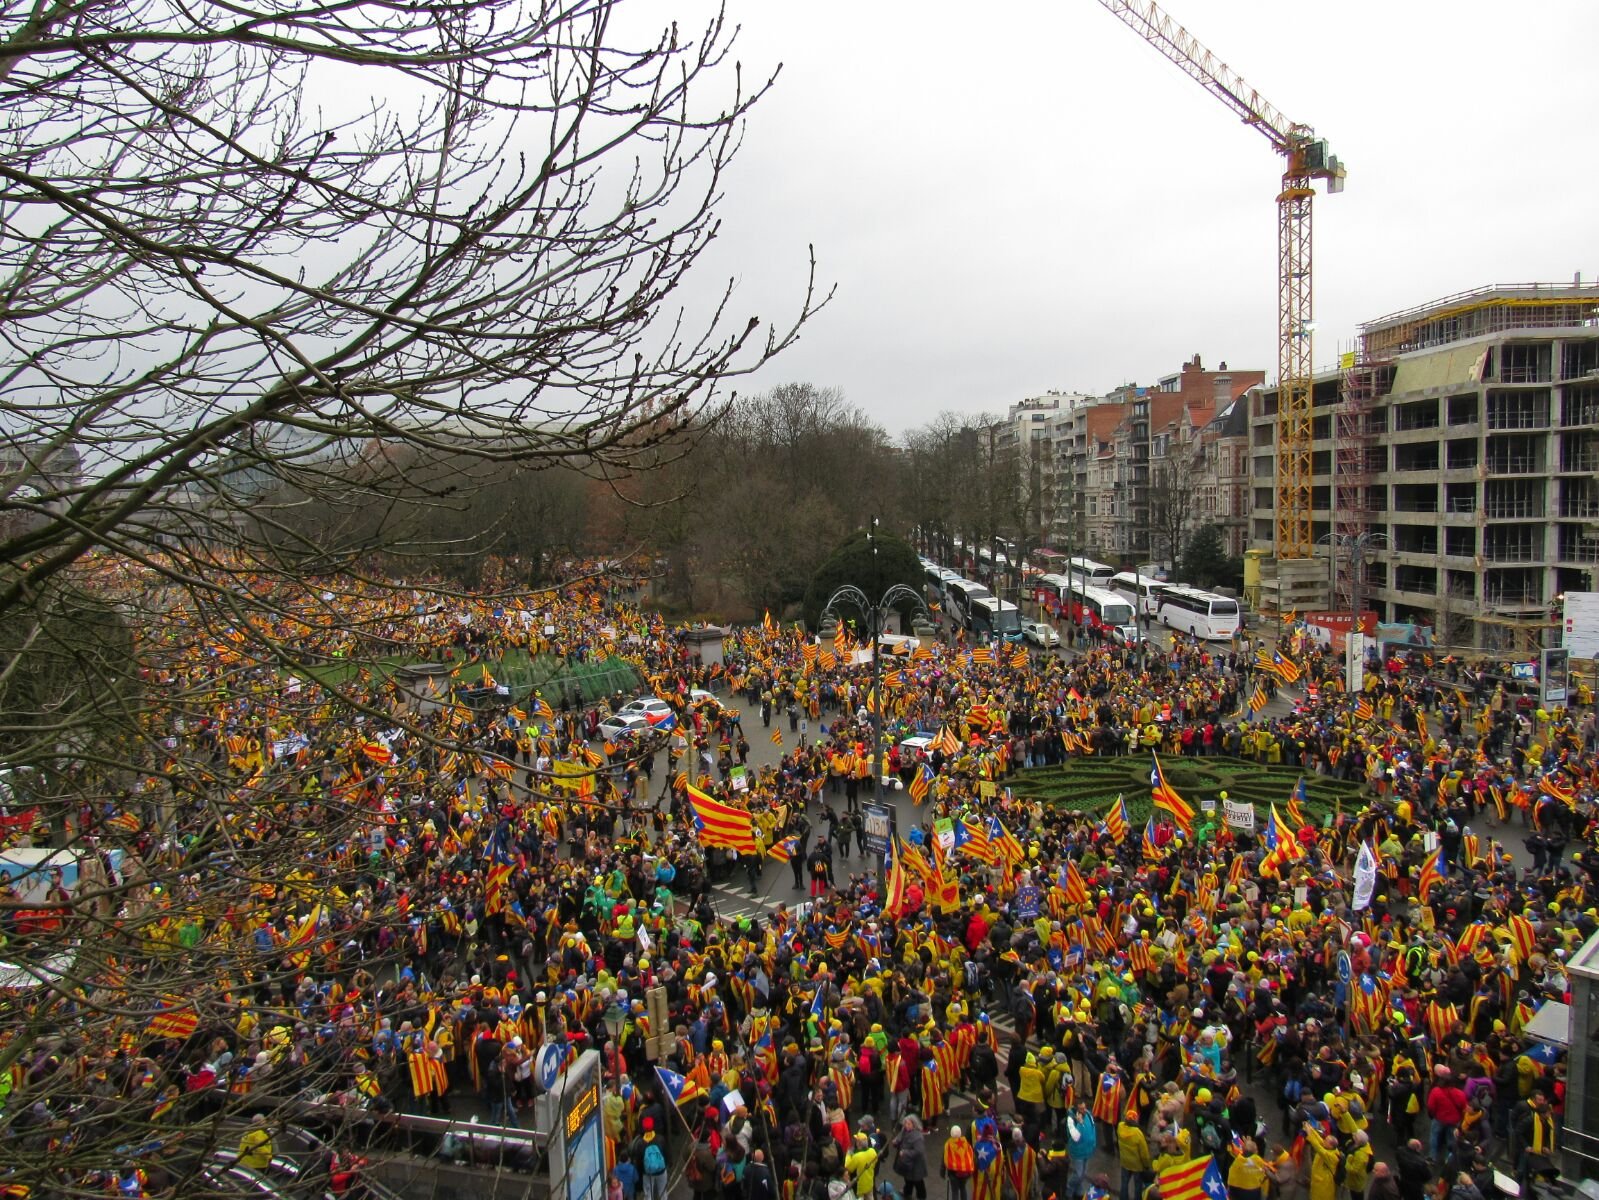 Reuters eleva la xifra de manifestants catalans a 50.000